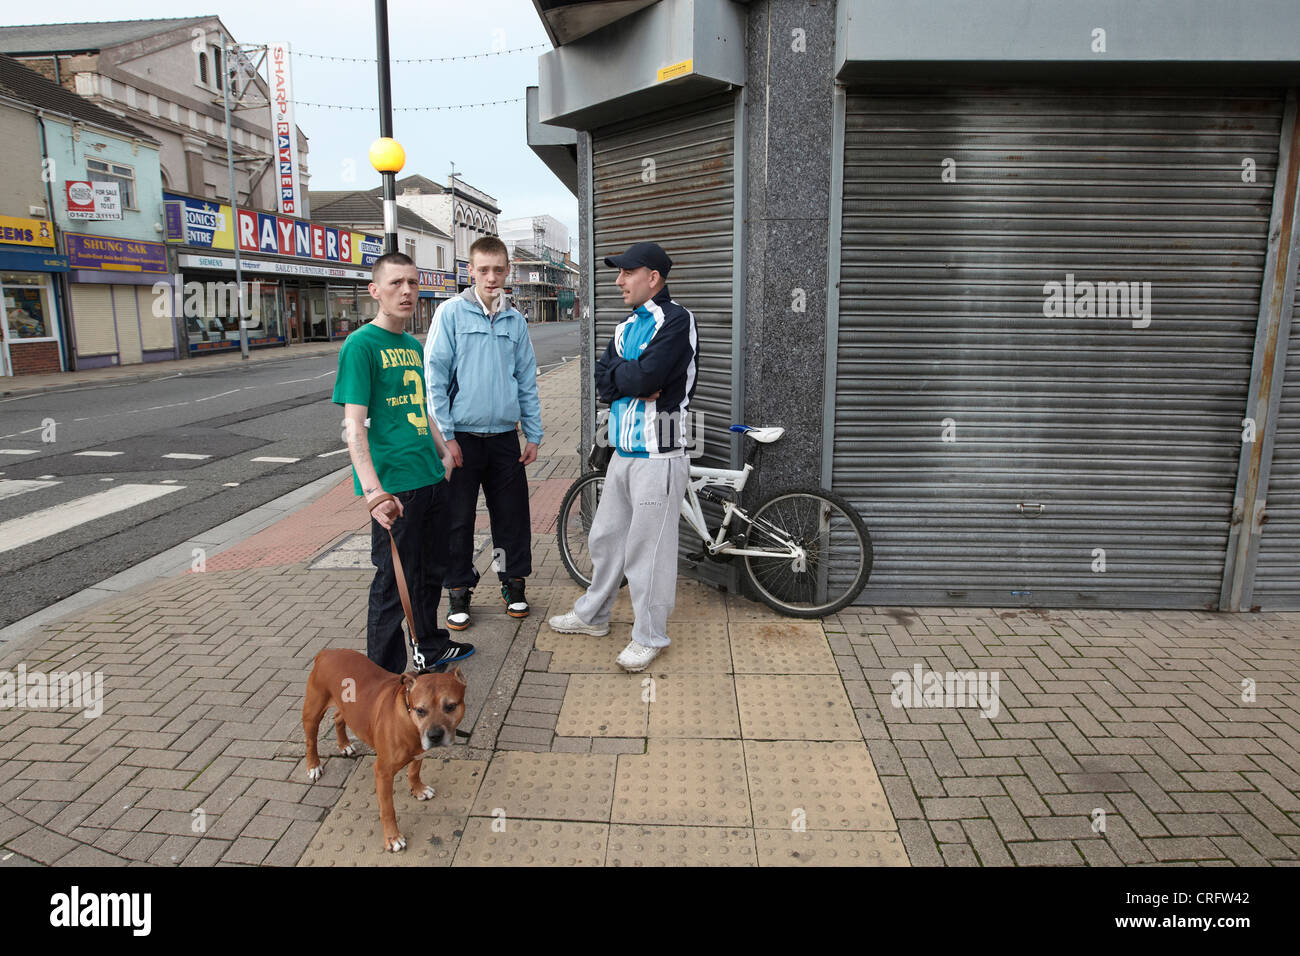 Grimsby street scene - Giovani uomini su un angolo di strada con il cane, Freeman Street, grimsby, lincolnshire, England, Regno Unito Foto Stock